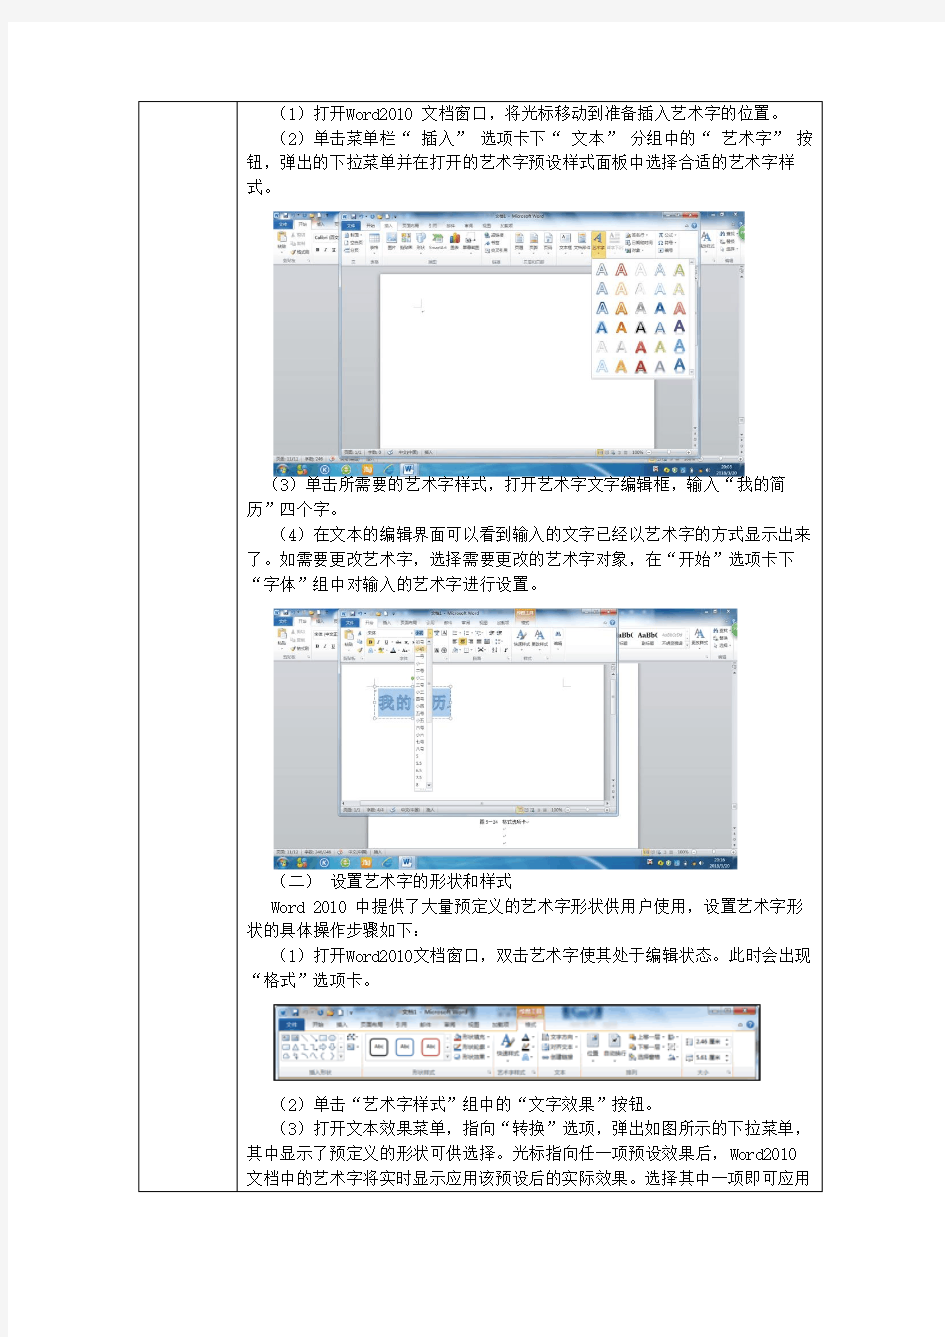 电子教案-《中文版Office 2010基础与实训》-A06-3969(示例) 任务5.2